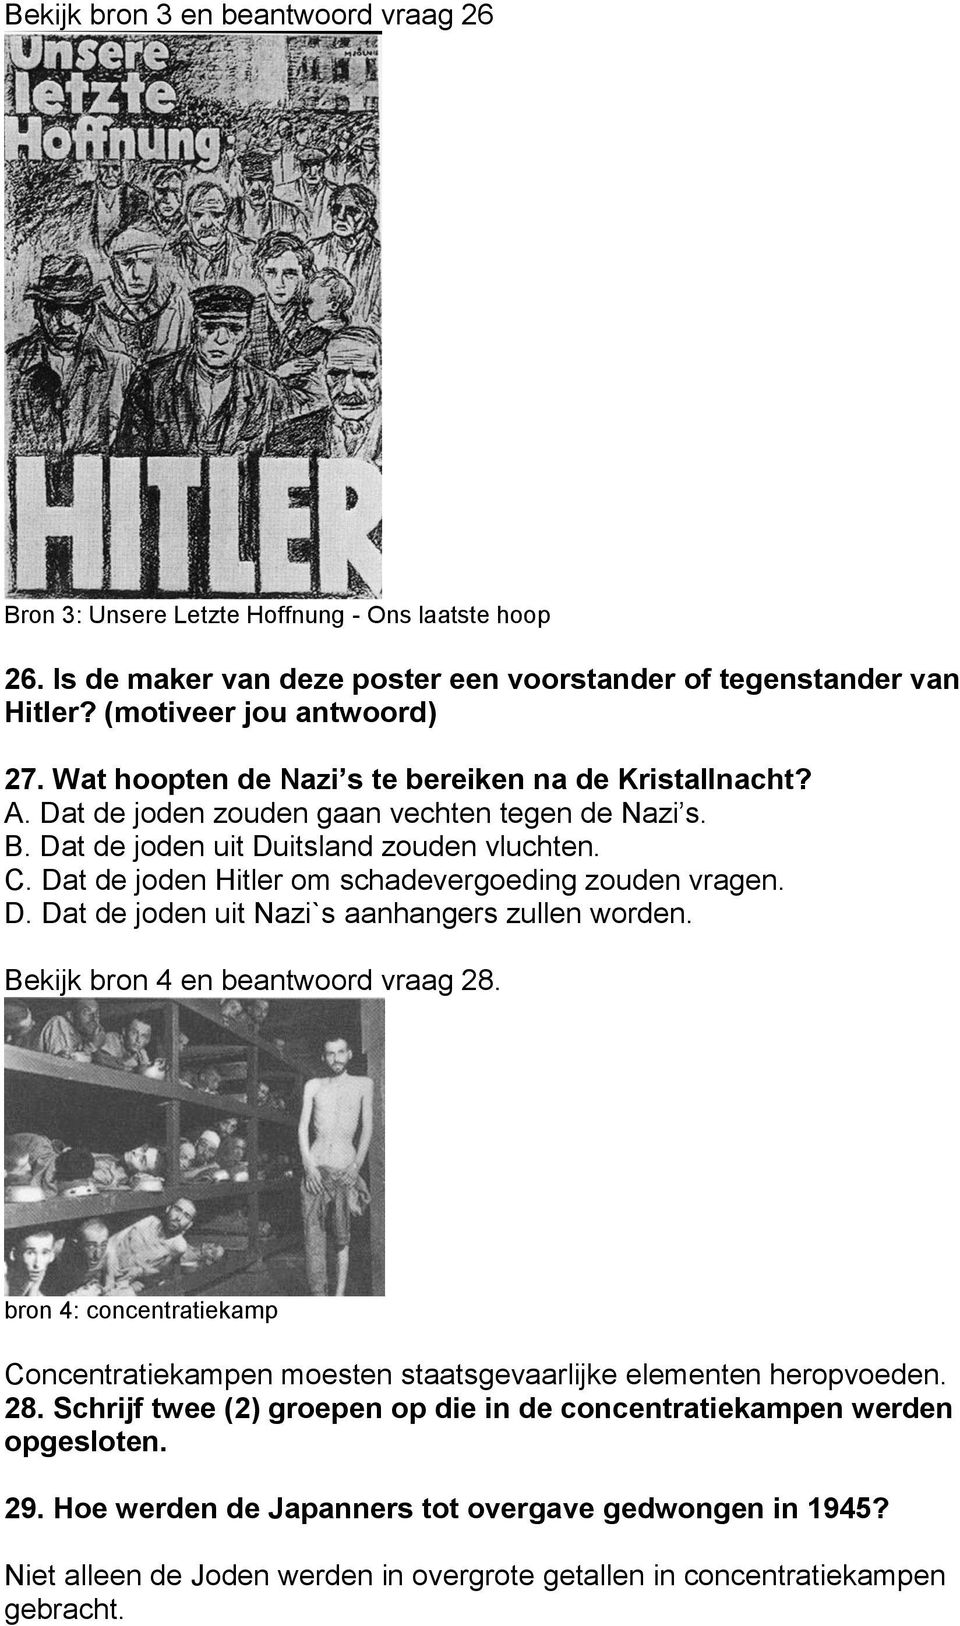 Dat de joden Hitler om schadevergoeding zouden vragen. D. Dat de joden uit Nazi`s aanhangers zullen worden. Bekijk bron 4 en beantwoord vraag 28.